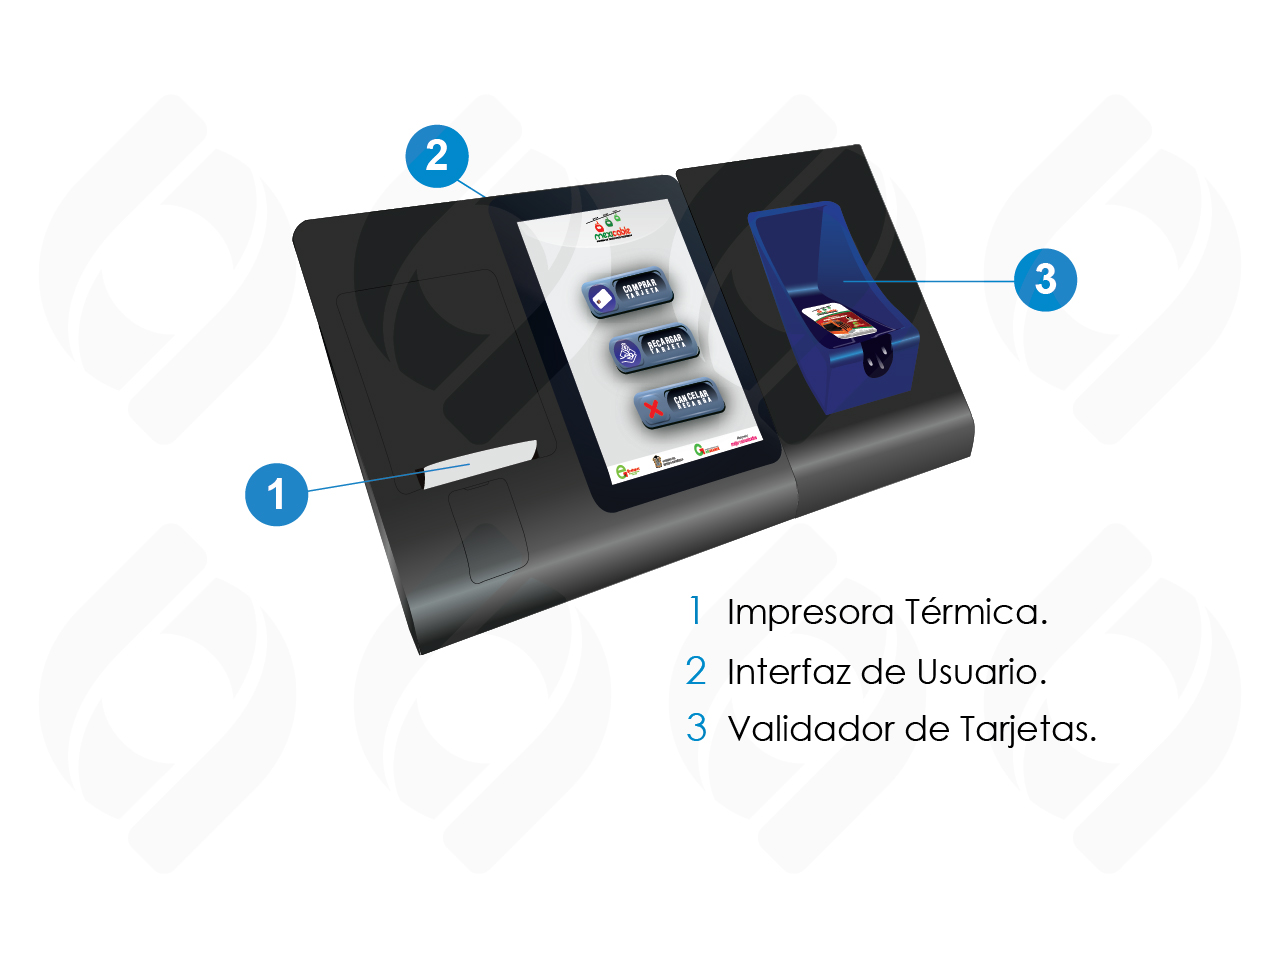 Interfaz de usuario del equipo punto de venta pos para reacarga de tarjetas sin contacto en transporte público y privado masivo